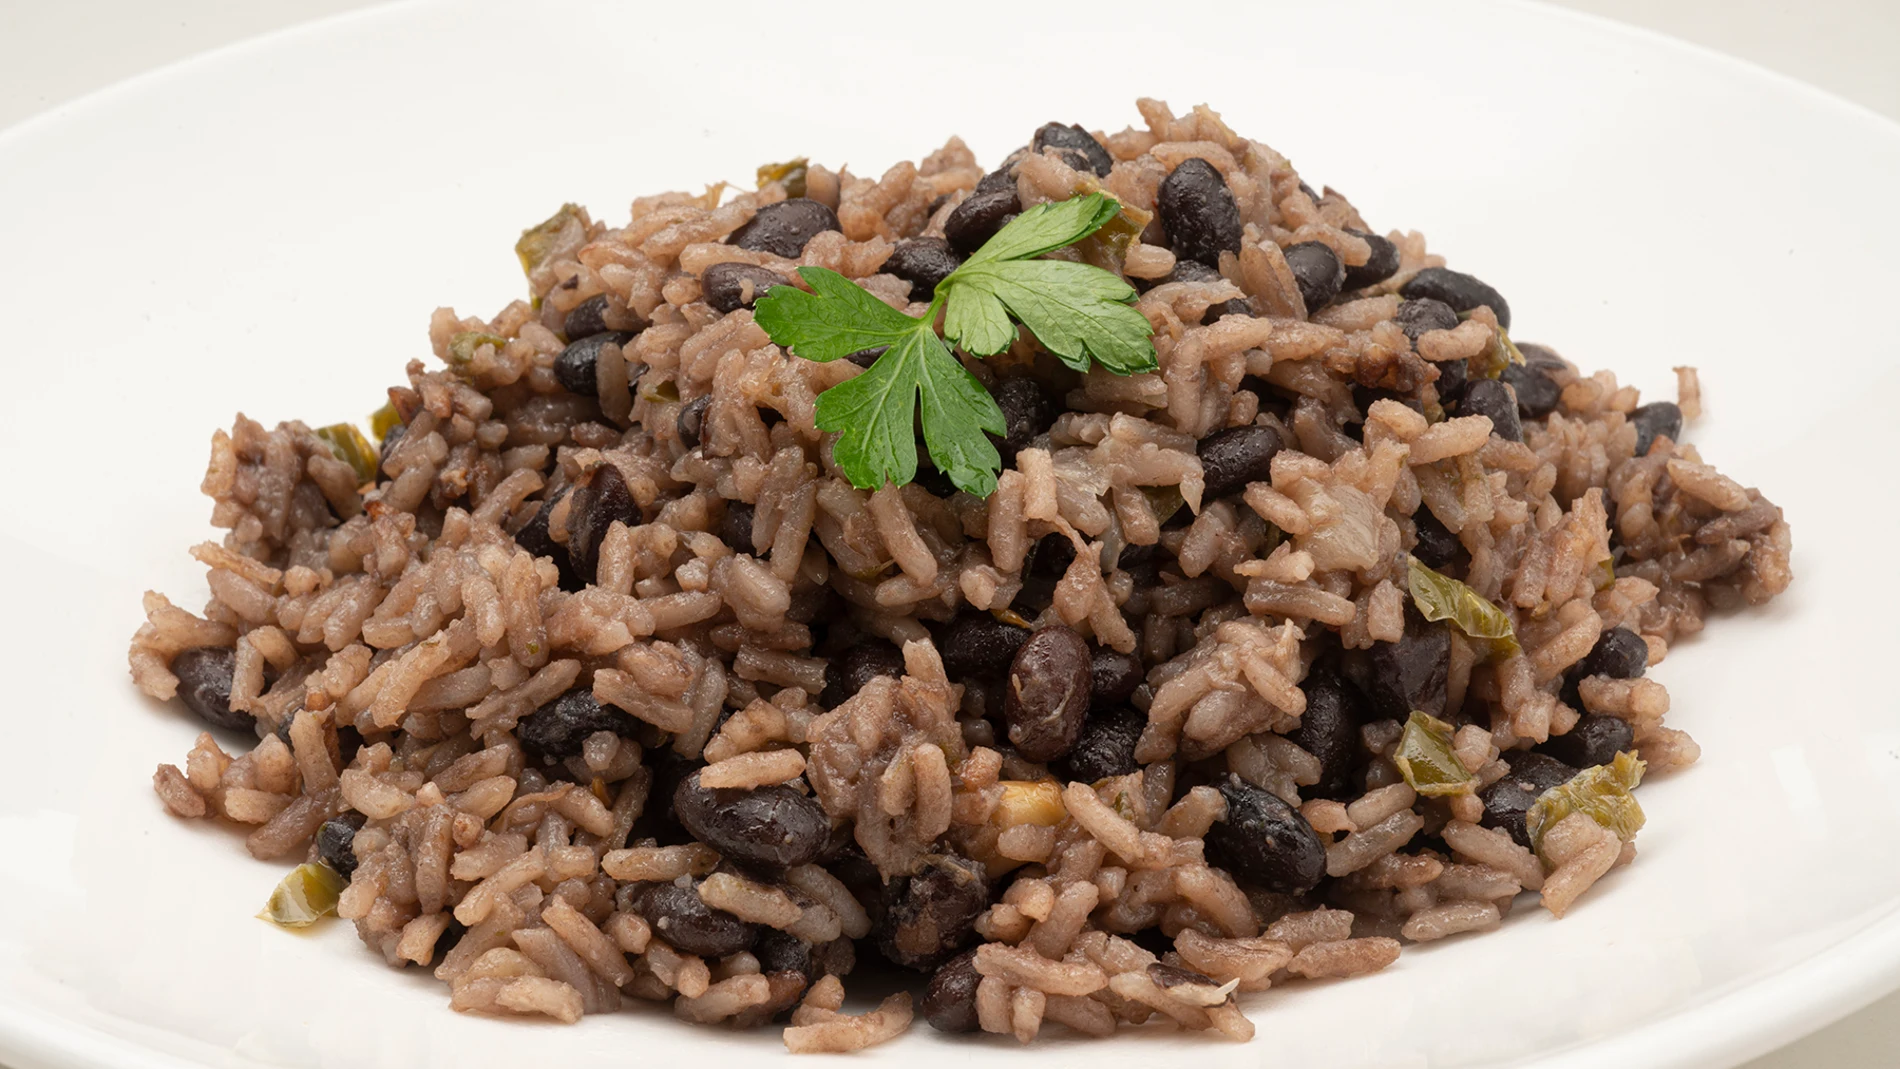 La receta cubana de Karlos Arguiñano: arroz congrí